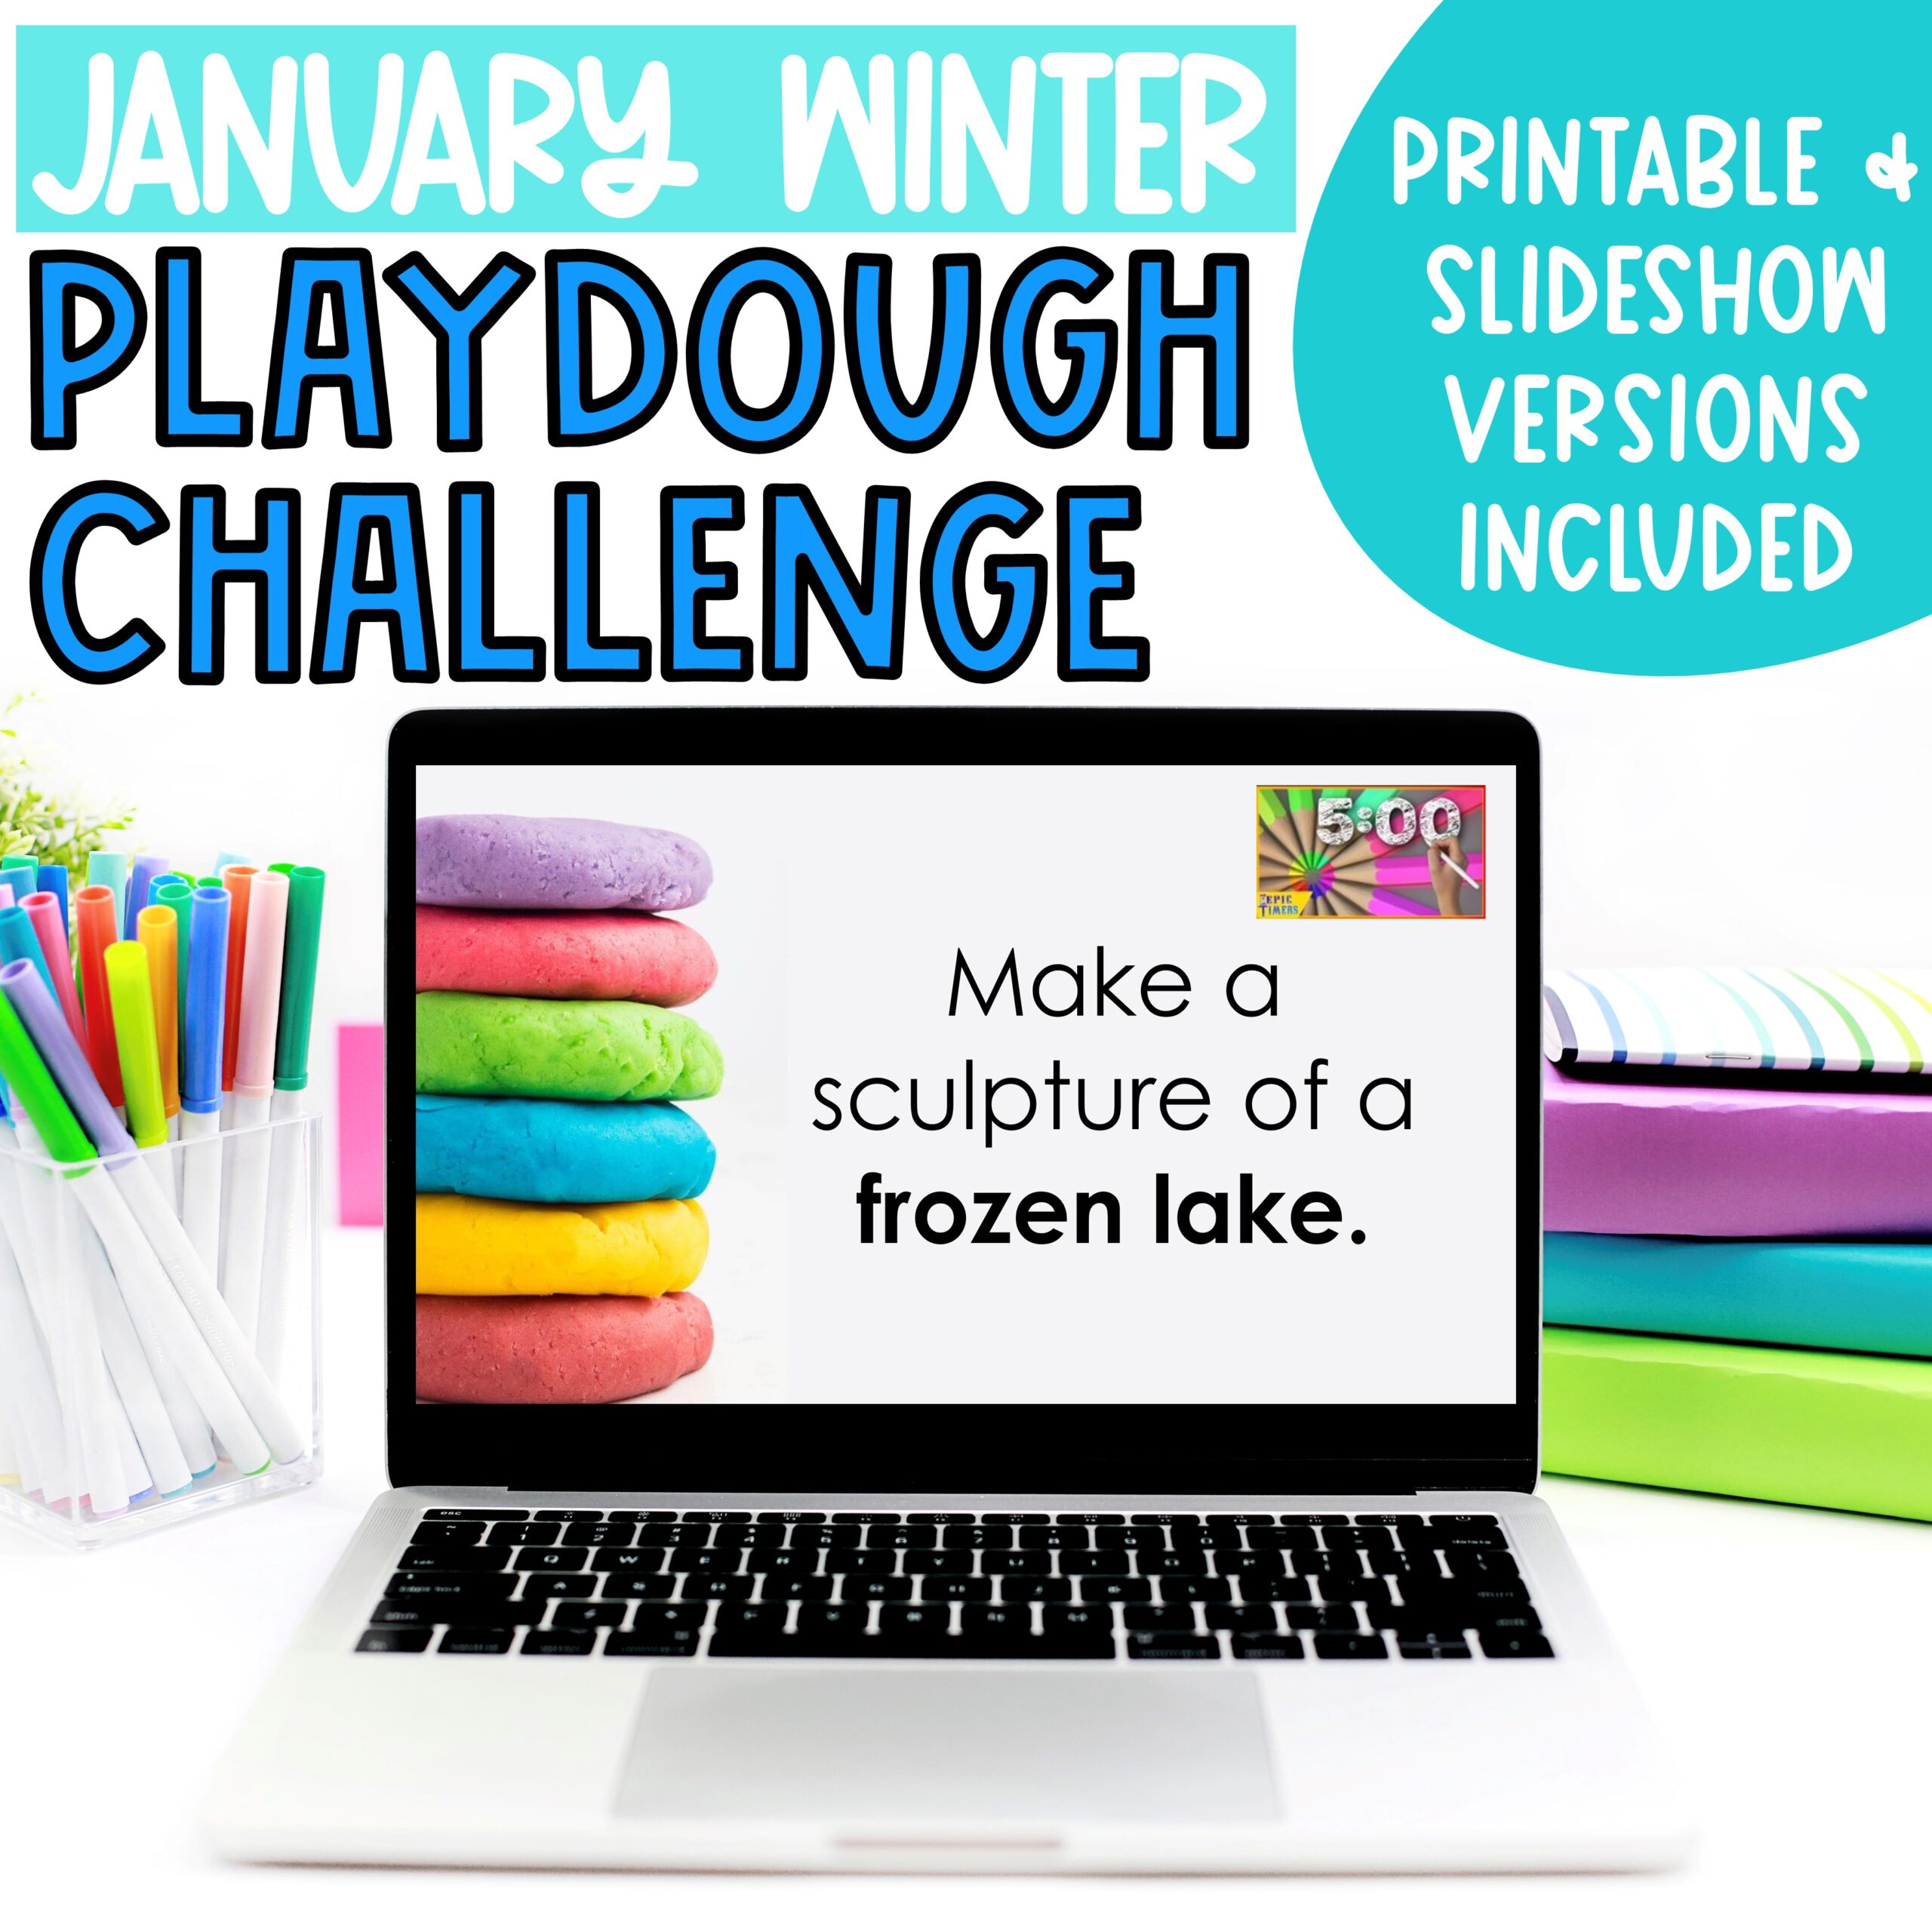 Playdough challenge for kindergarten